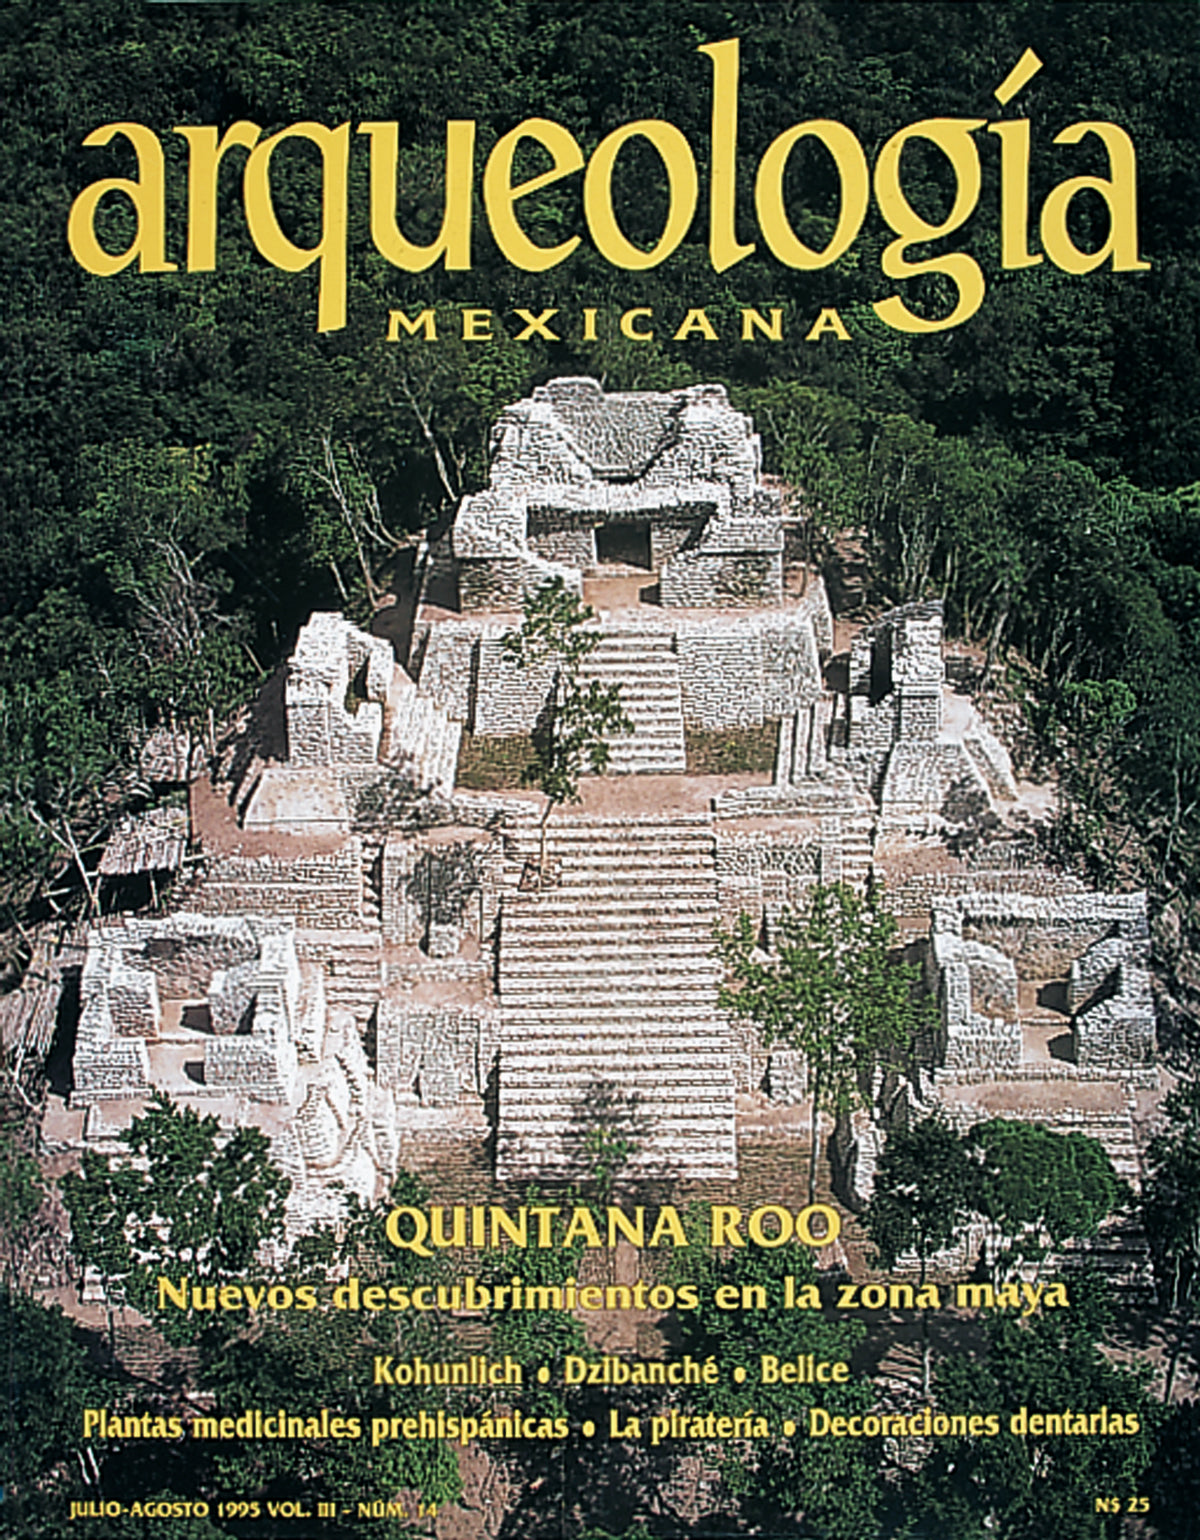 Quintana Roo. Nuevos descubrimientos en la zona maya